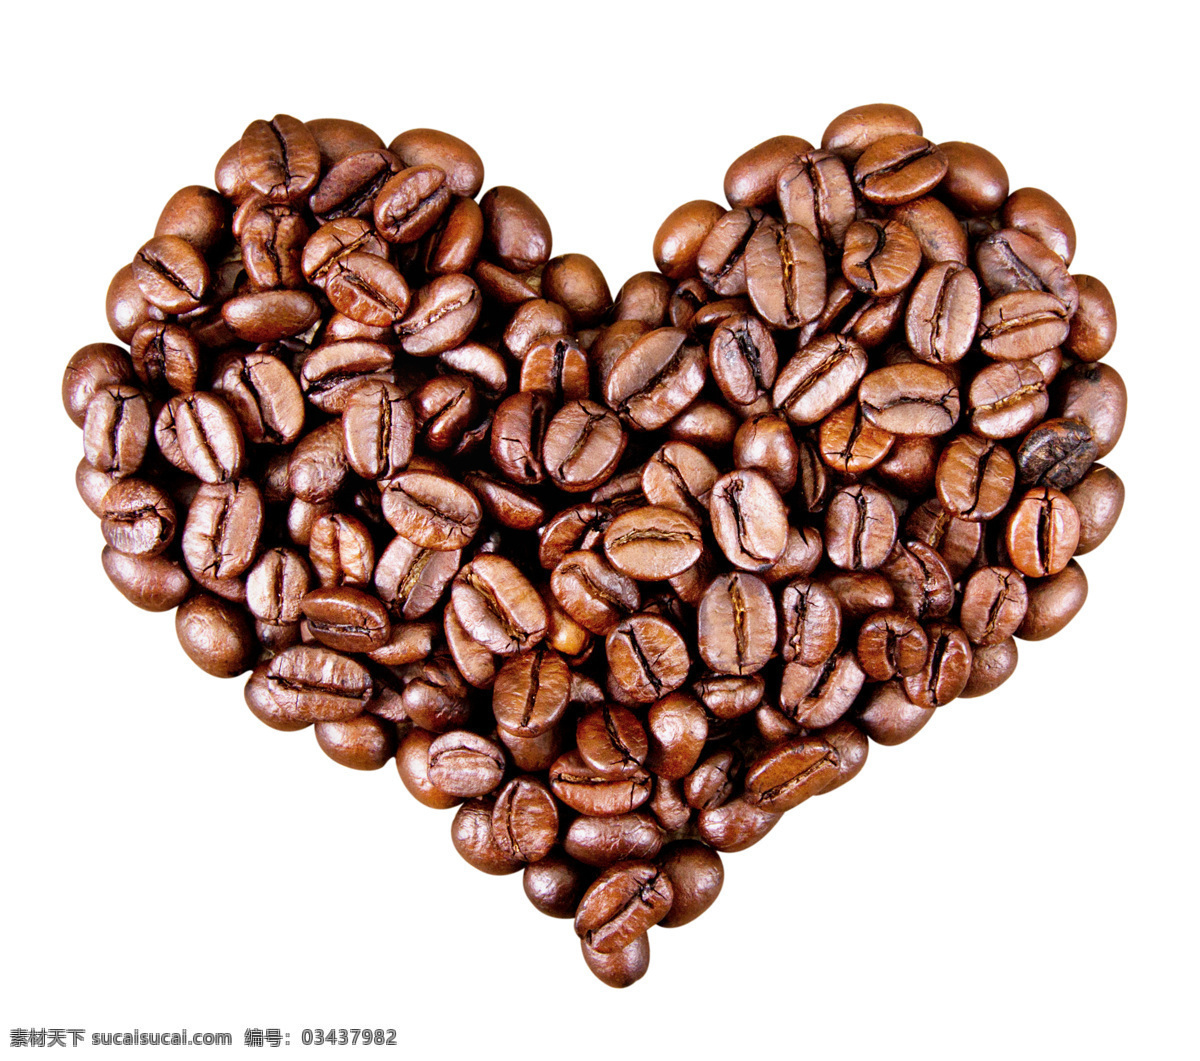 心形咖啡豆 爱心咖啡豆 创意咖啡豆 艺术咖啡豆 情人节元素 情人节素材 七夕元素 七夕素材 爱心 创意爱心 艺术爱心 创意心形 心形 艺术心形 情人节 生活百科 生活用品